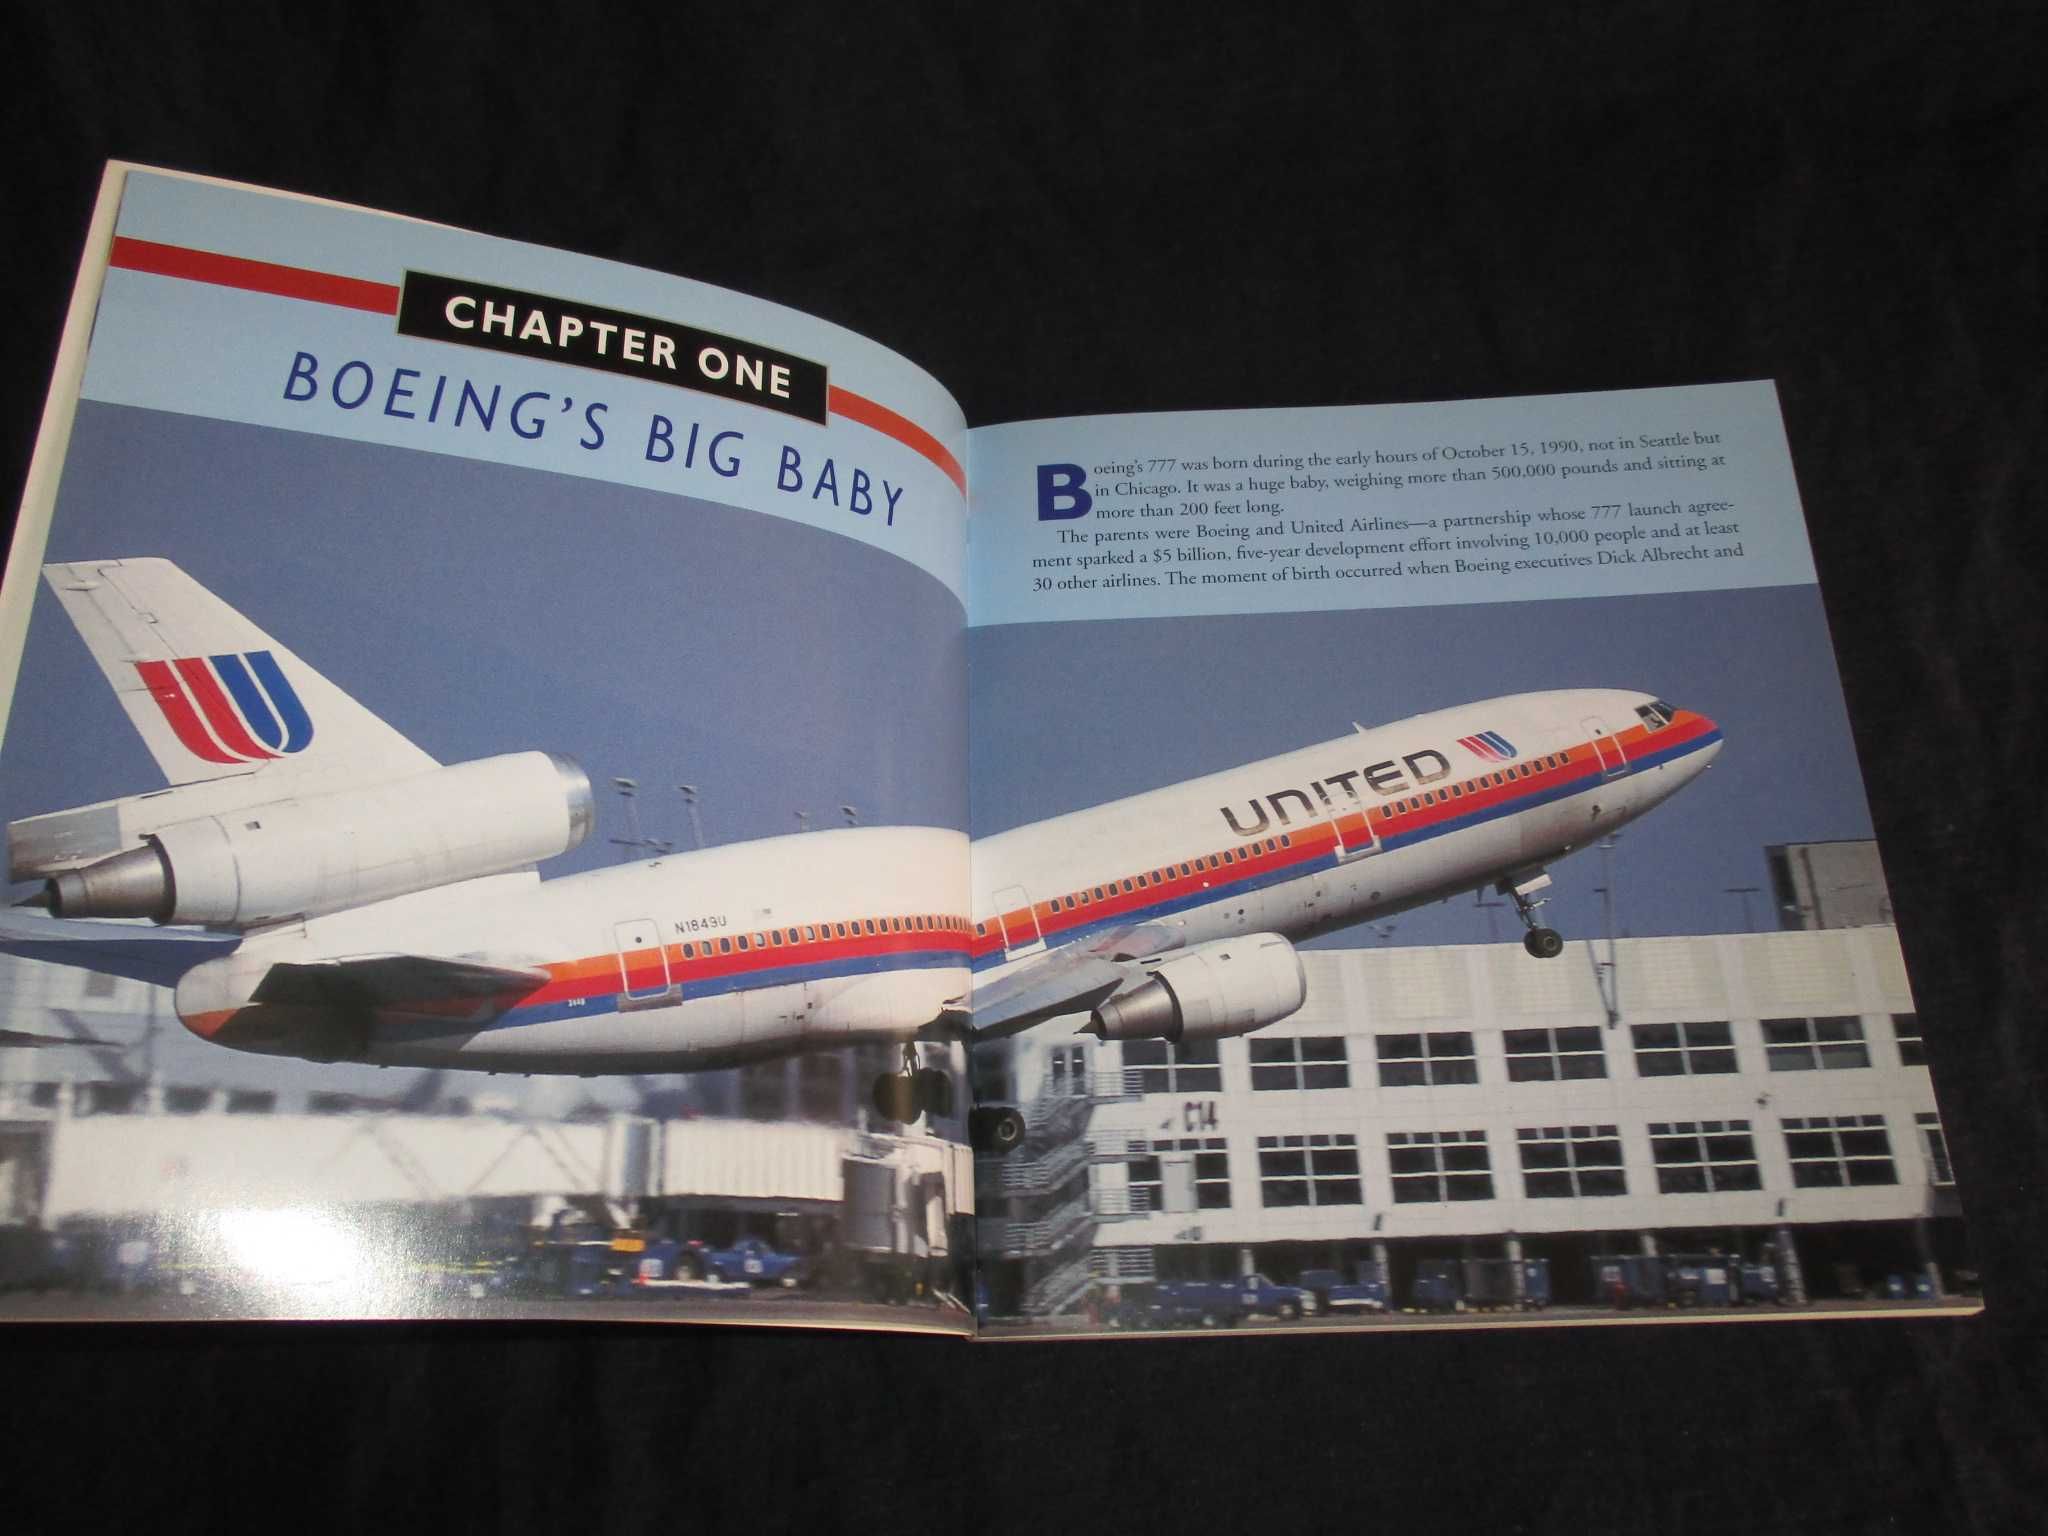 Livro Boeing 777 The Technological Marvel